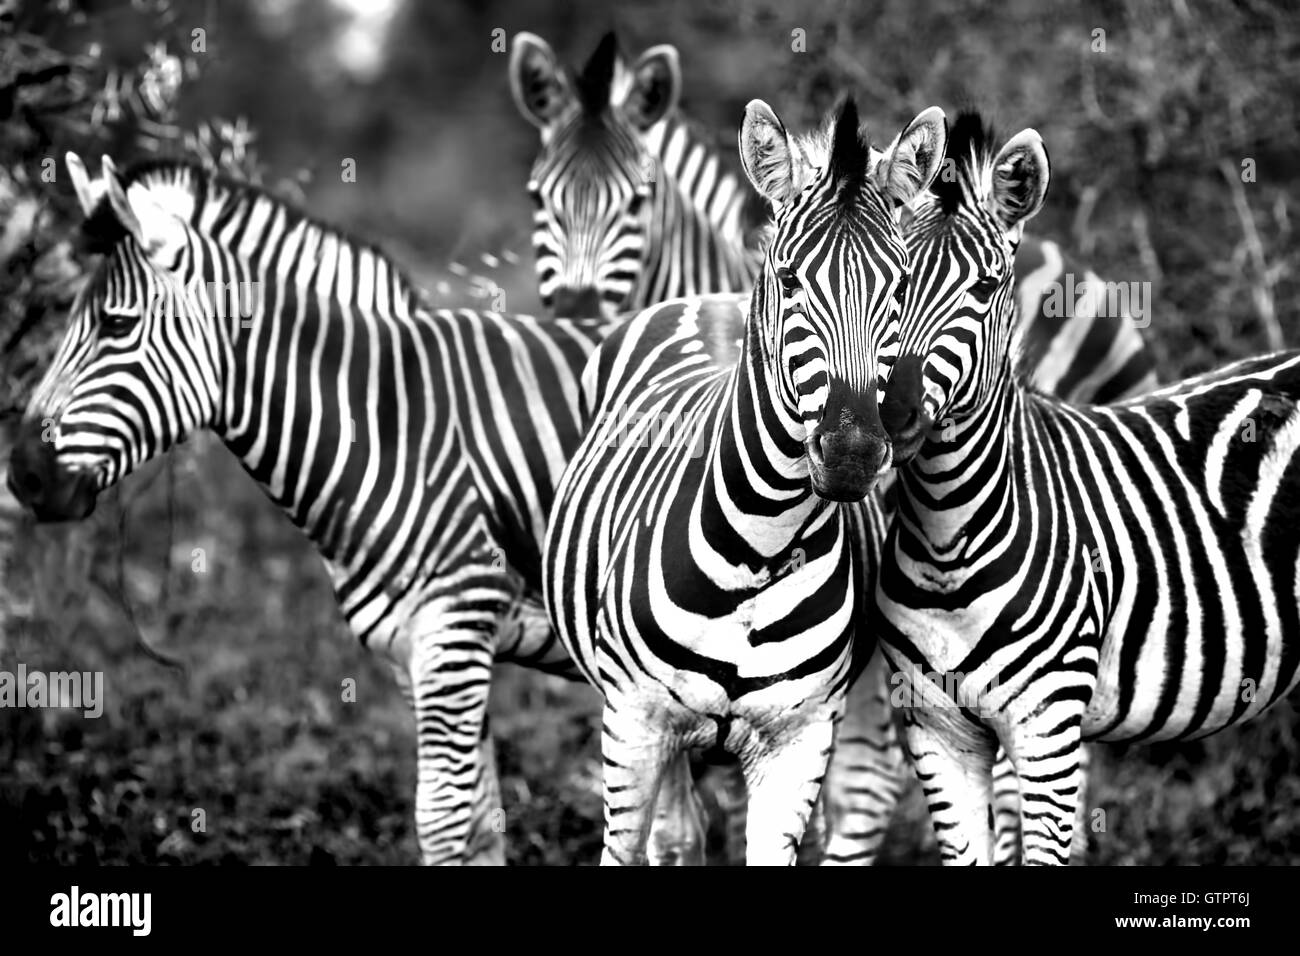 Photo en noir et blanc d'une famille de zèbres sauvages, de beaux animaux d'Afrique, Kruger National Park, safari game drive Banque D'Images